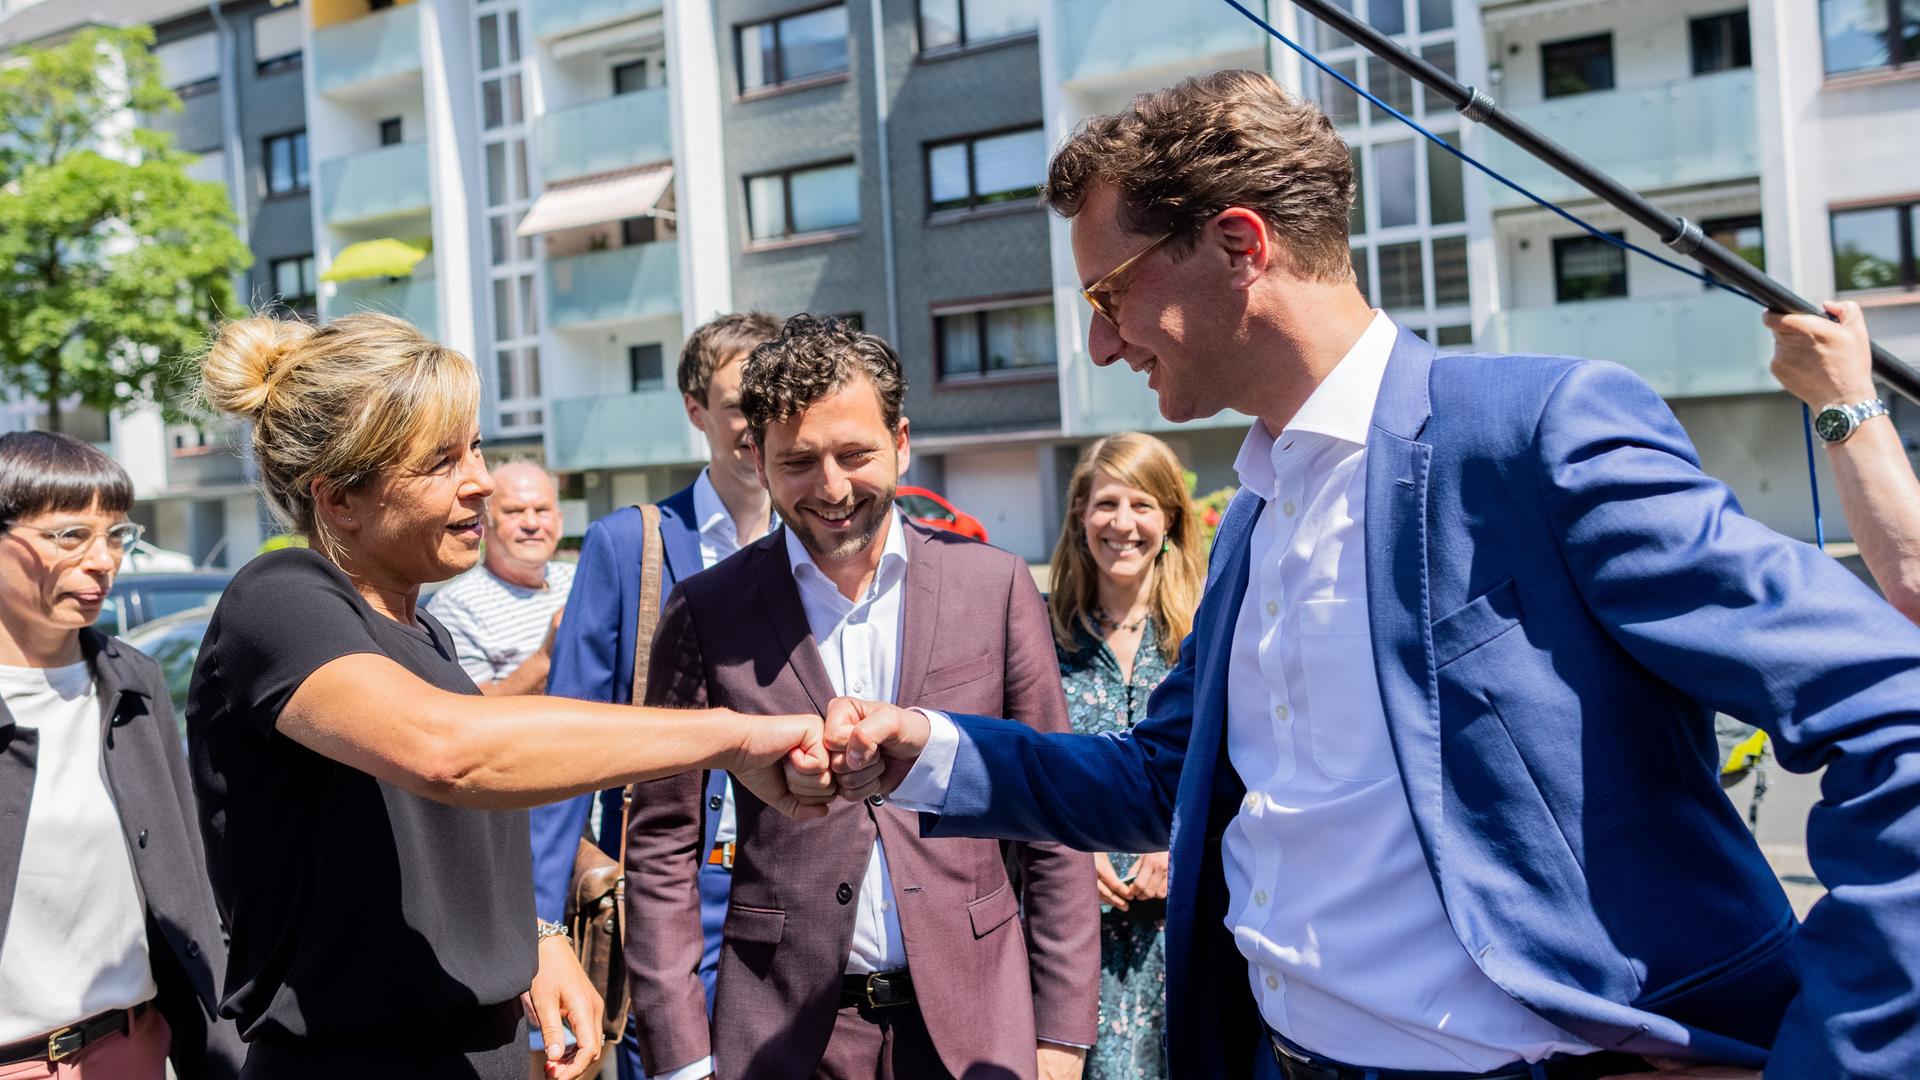 Ministerpräsident Wüst (CDU) und Grünen-Spitzenkandidatin Neubaur begrüßen sich mit einem Faustgruß bei ersten Gesprächen in Düsseldorf